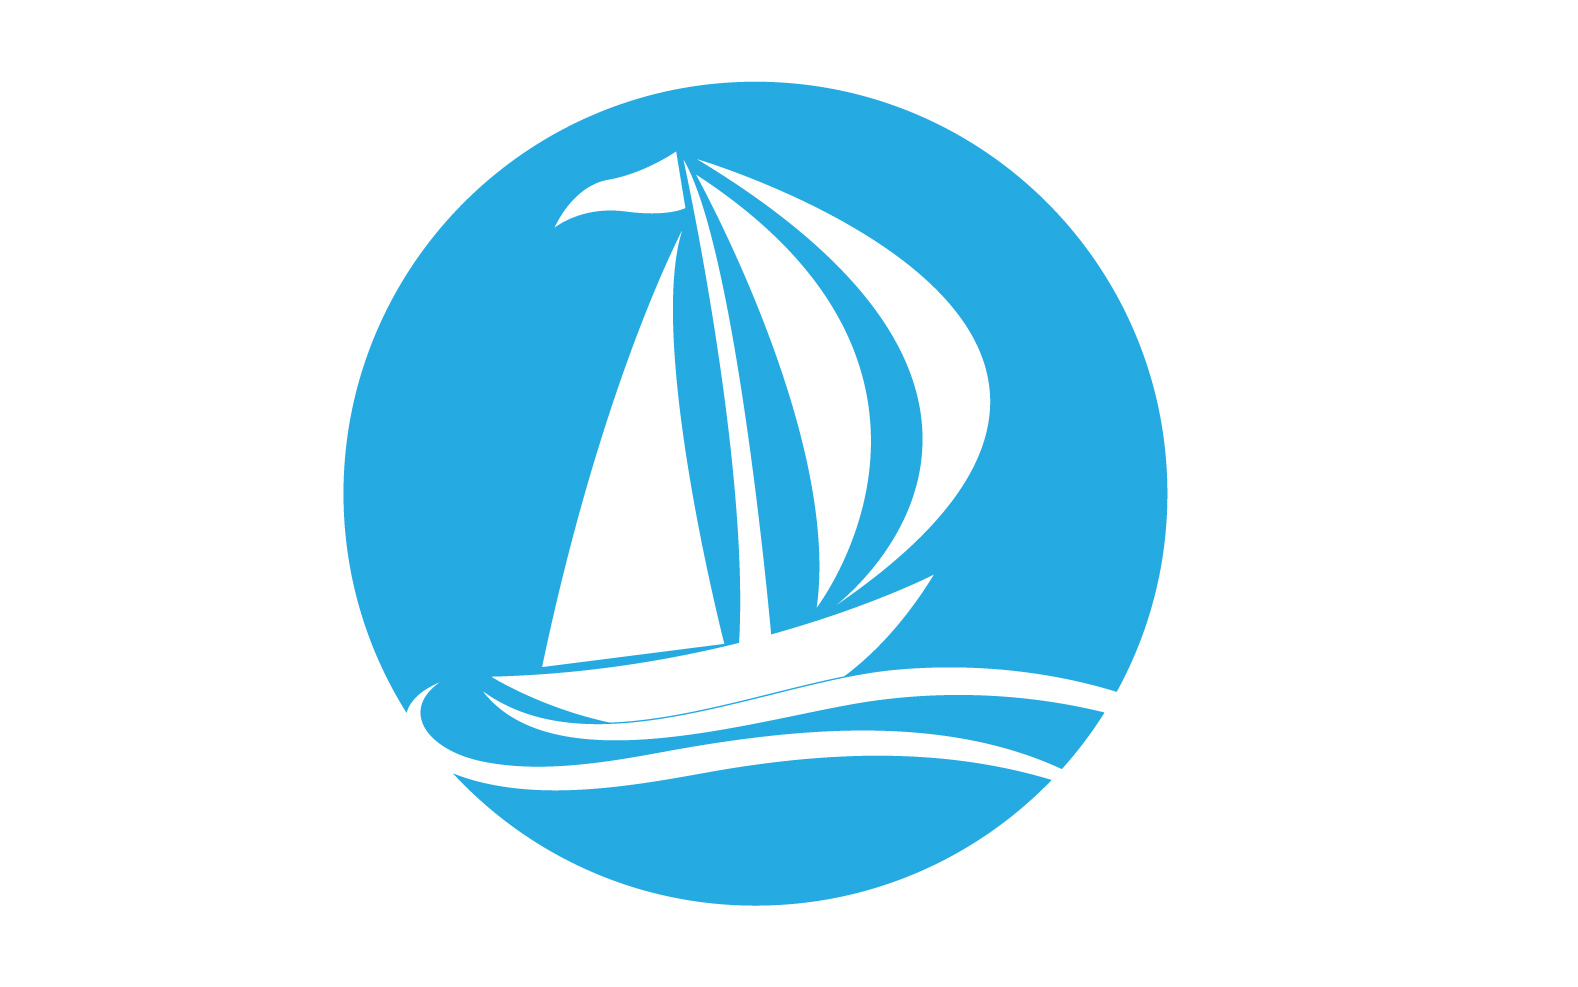 Ocean Cruise linear Ship Silhouette logo Vector 54